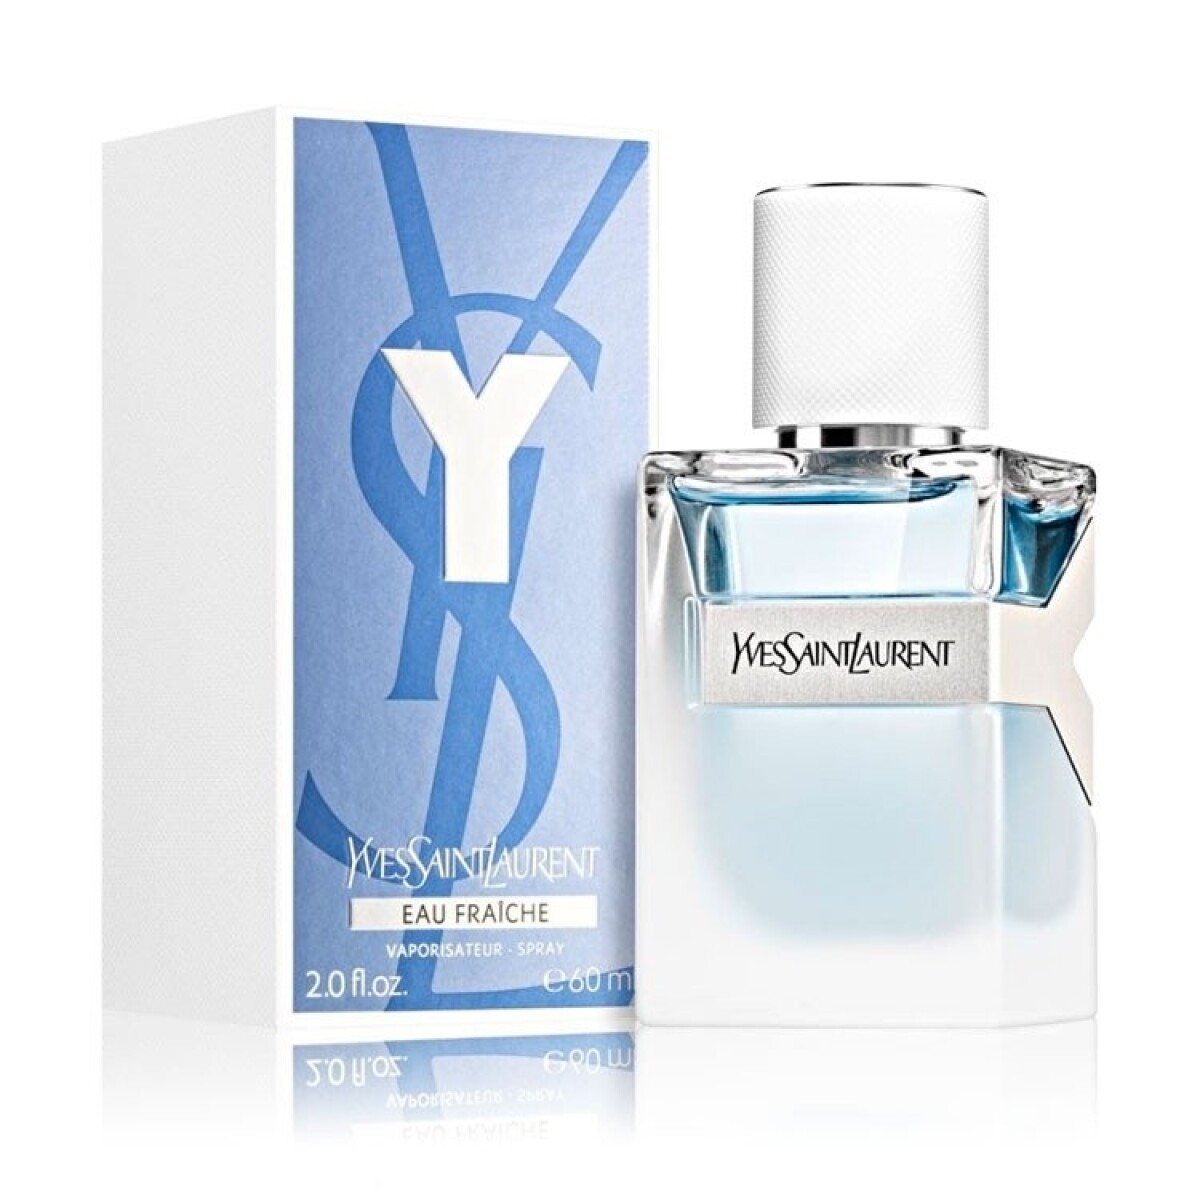 Perfume Y Ysl Eau Fraiche Edt 60 Ml. 